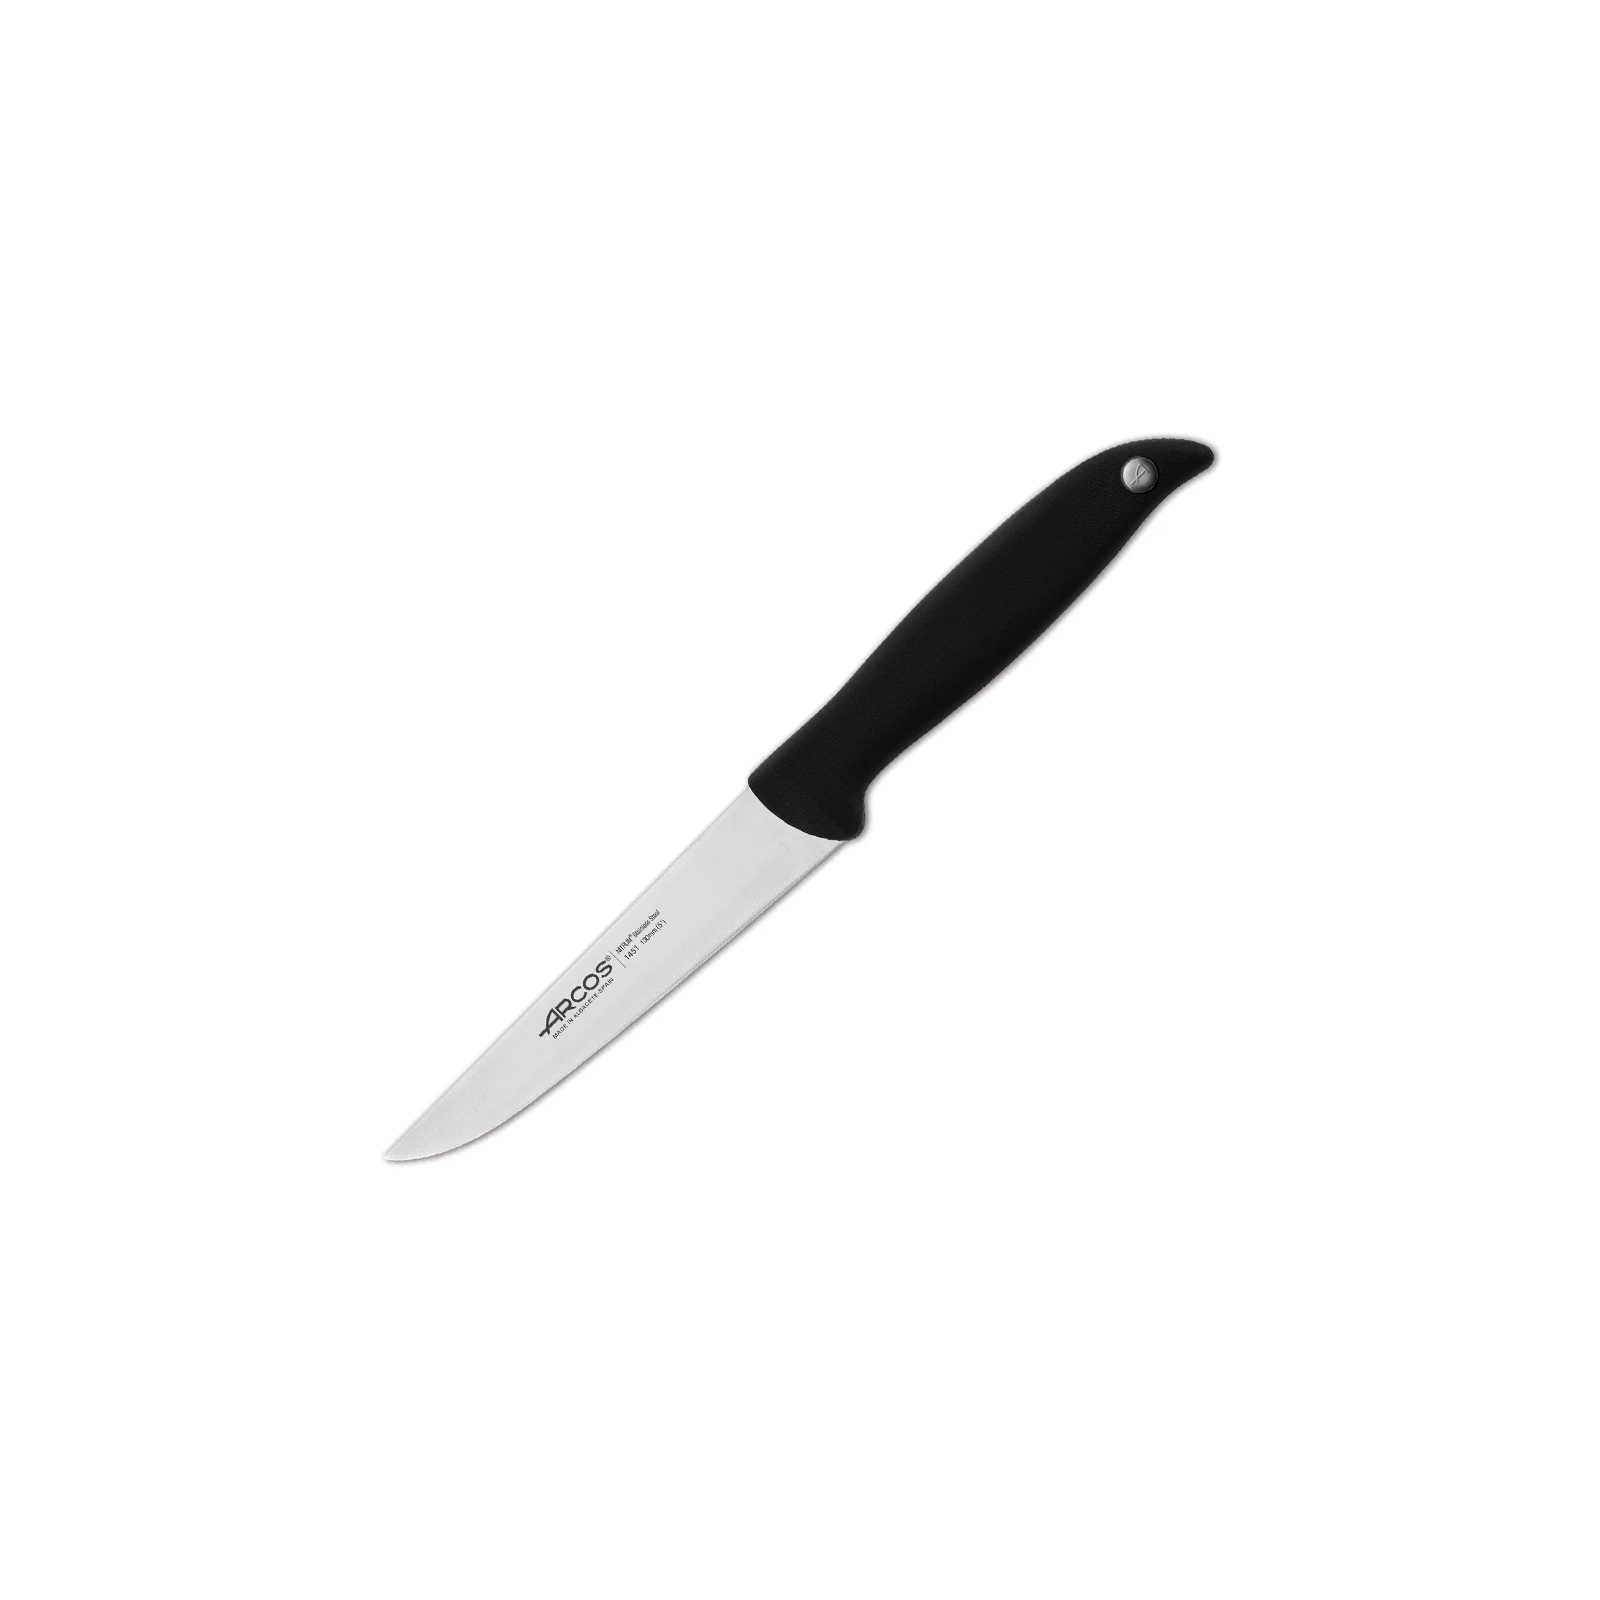 Кухонный нож Arcos Menorca 130 мм (145100)